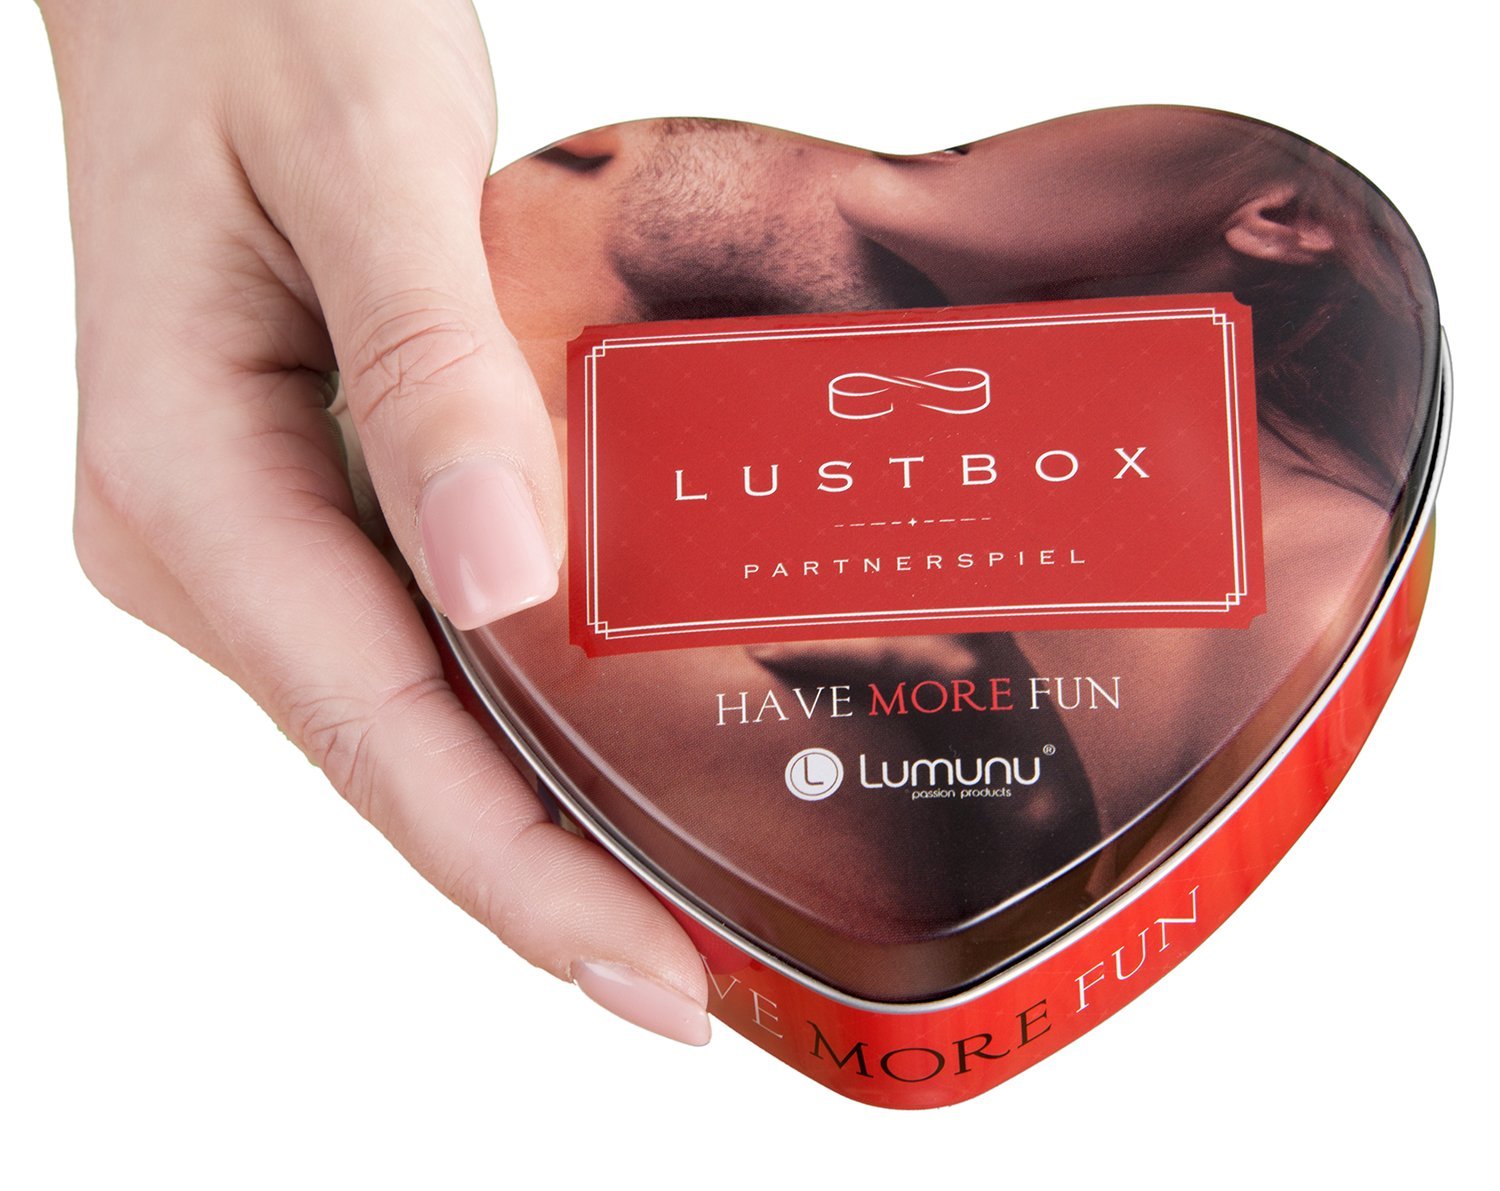 Deluxe Lumunu Liebesspiel "Lustbox" test